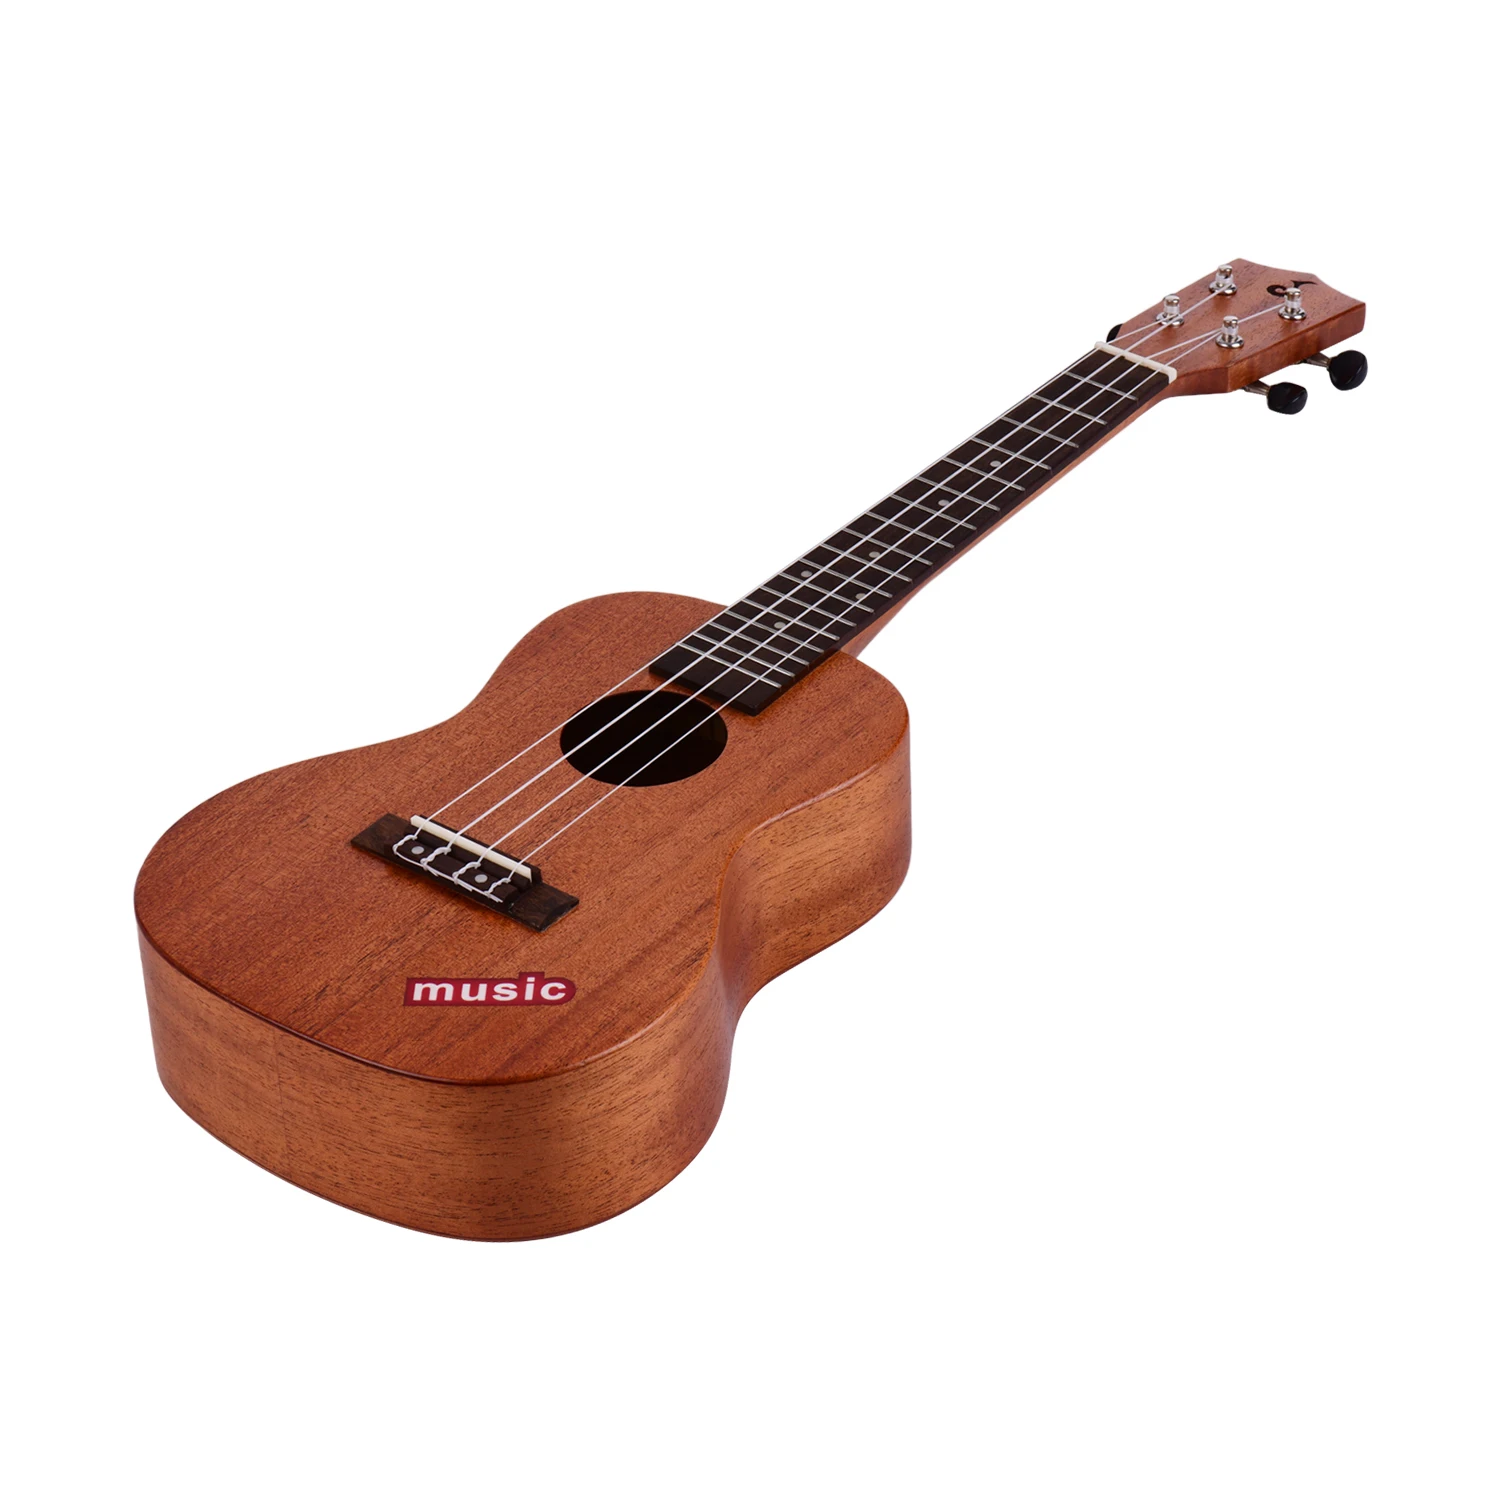 23 Tommer Concert Ukulele Mahogni Træ Hawaii-Guitar for Begyndere og Professionelle Spillere Ukulele Komplet Kit 2